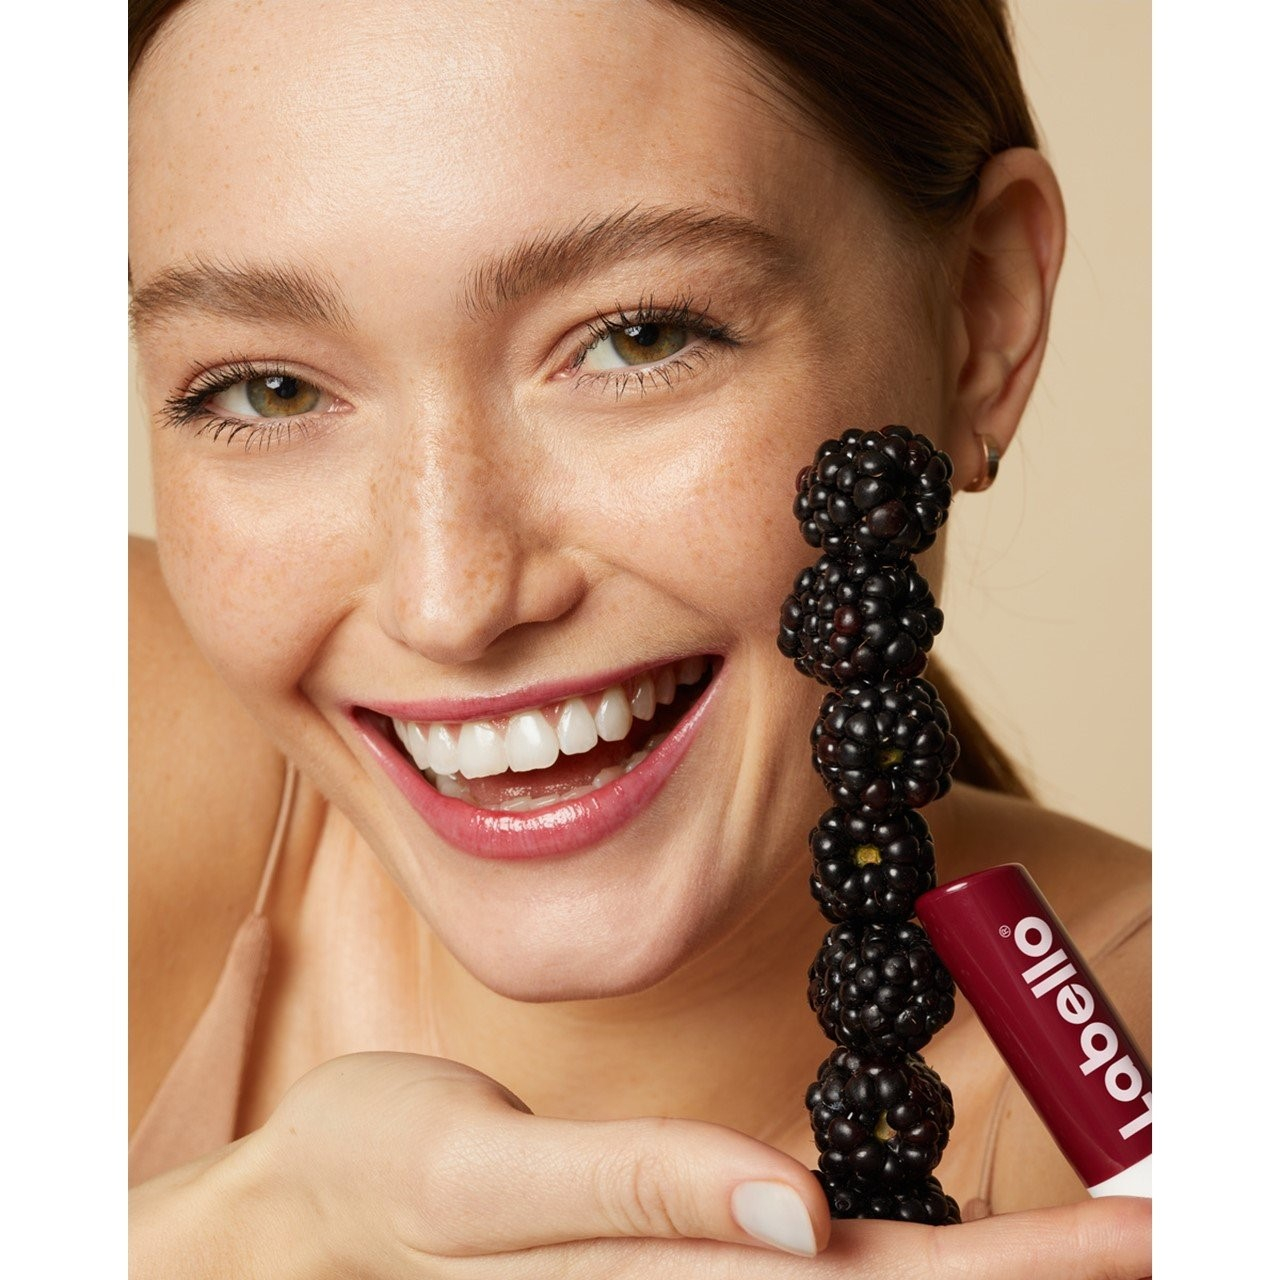 LABELLO Blackberry Shine - Lápiz de labios con brillo rojo y pigmentos  brillantes, cuidado de labios sin aceites minerales, 4,8 g